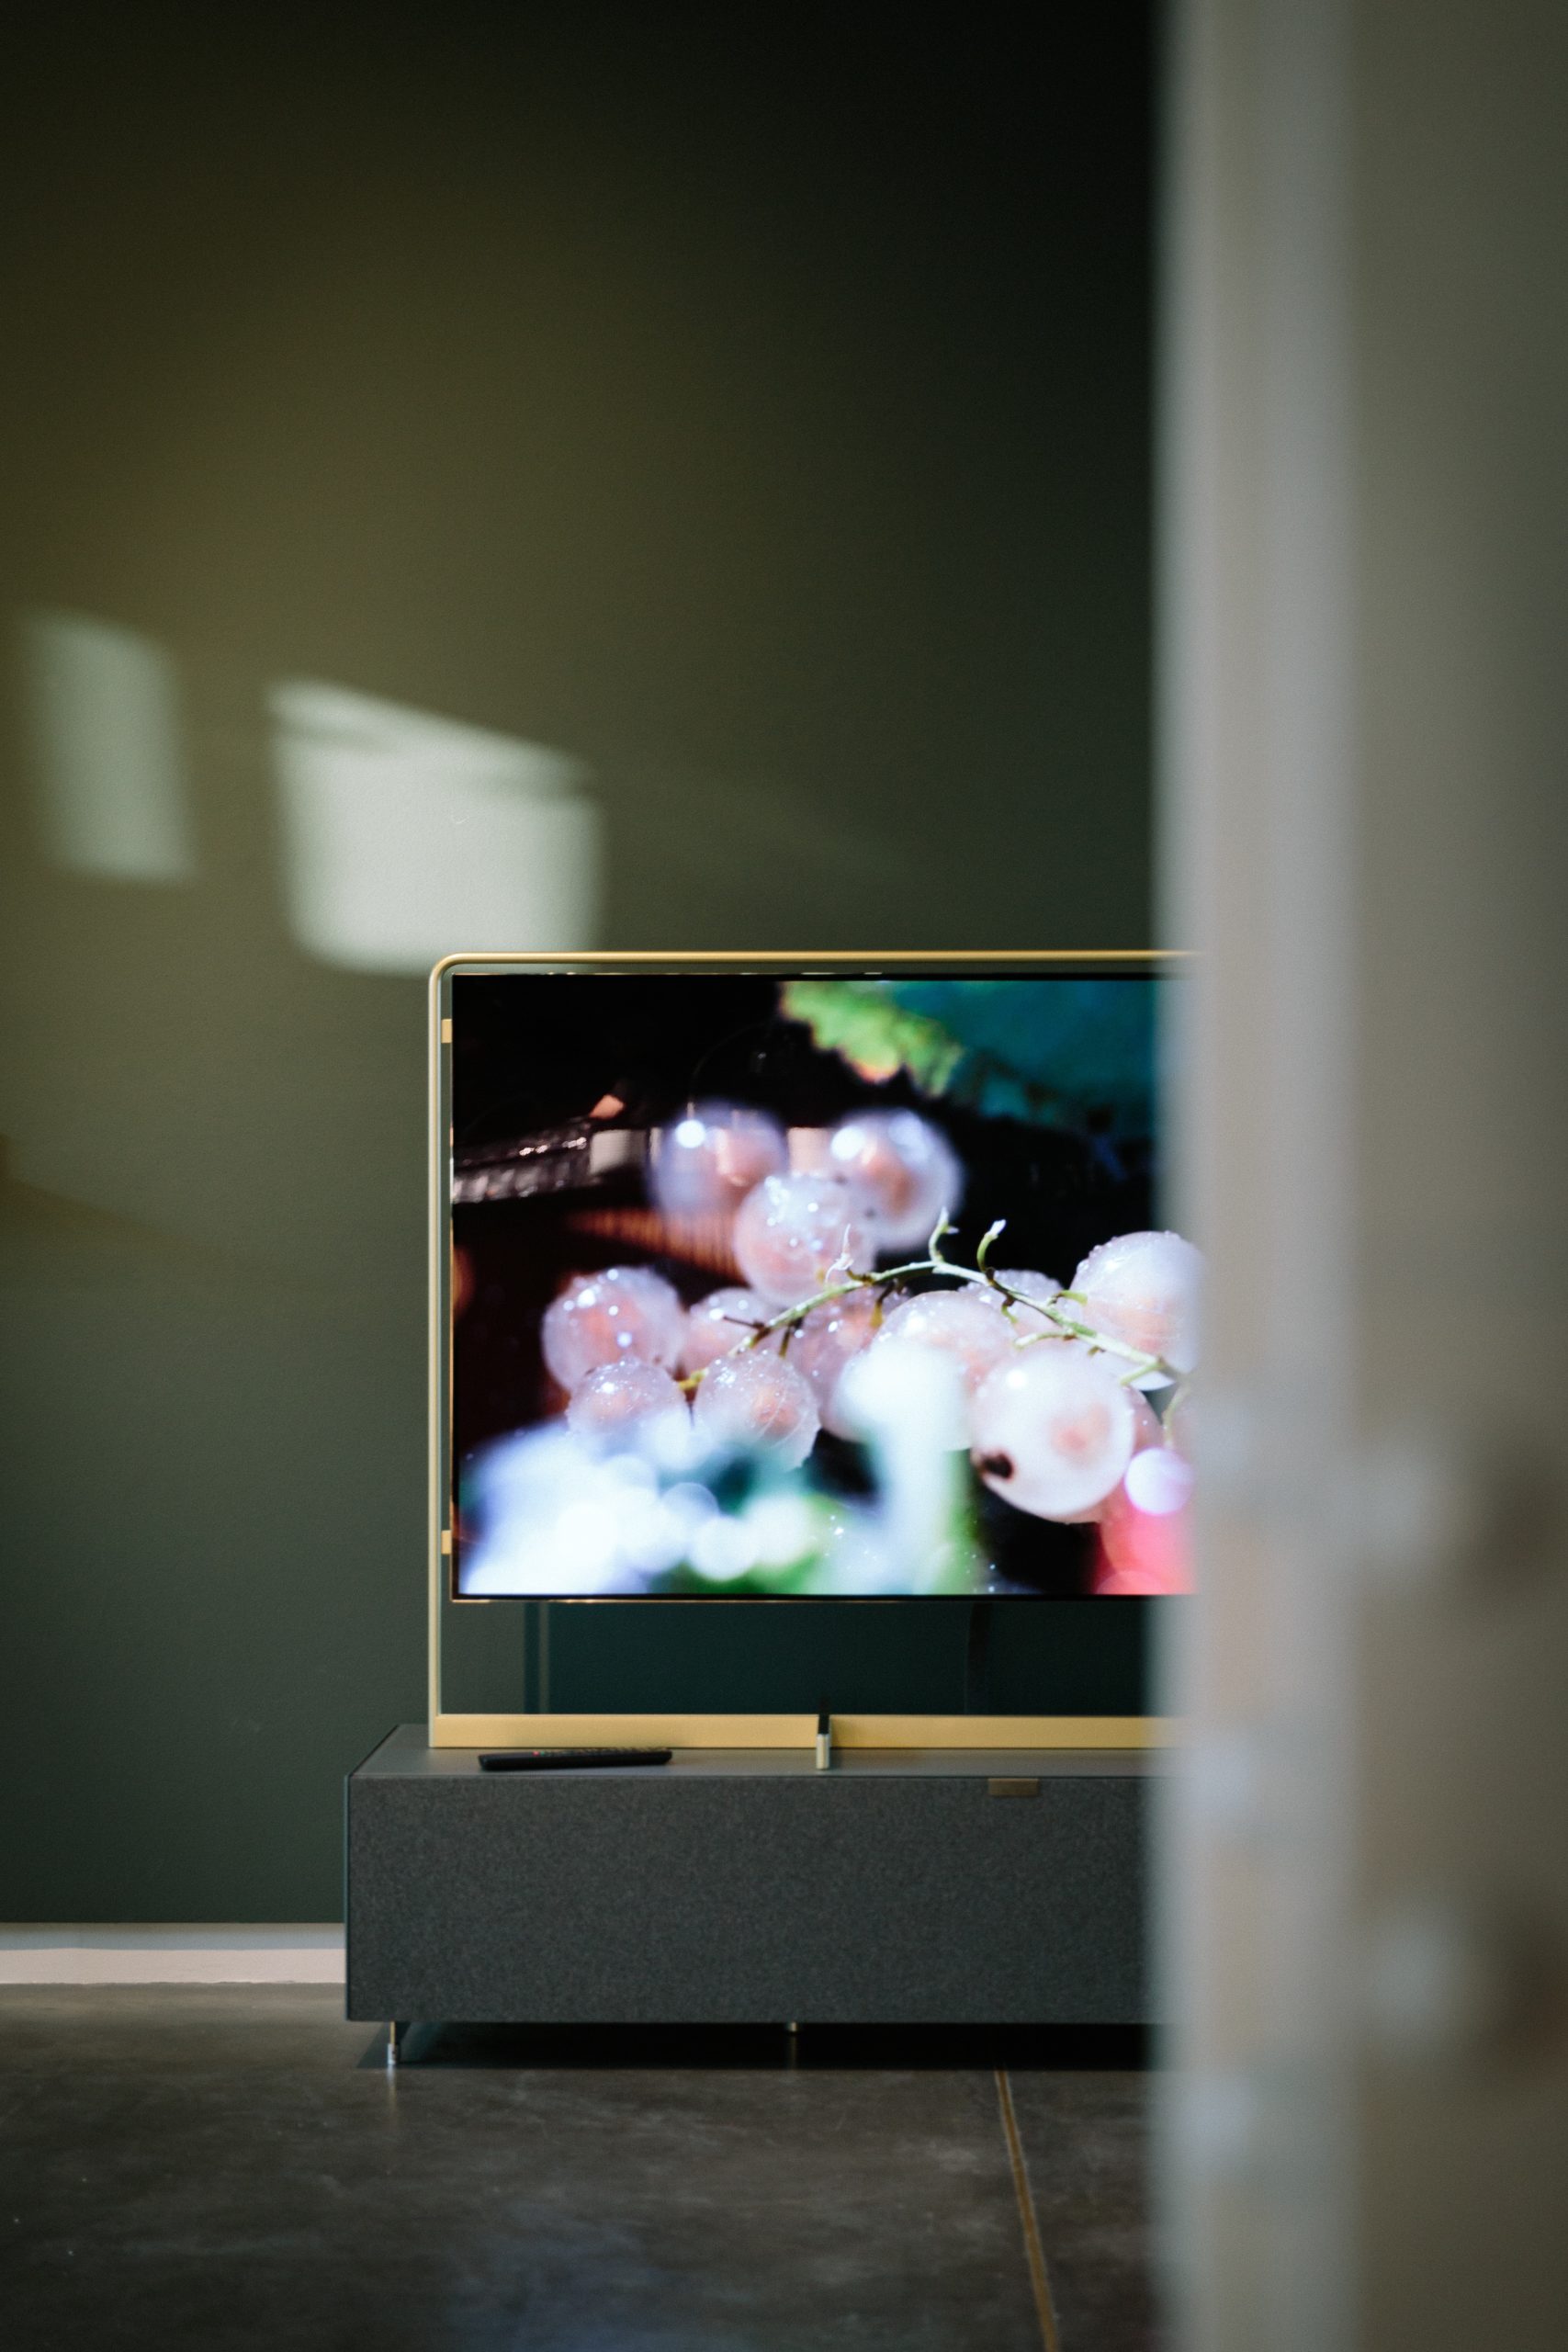 TV displaying cherries